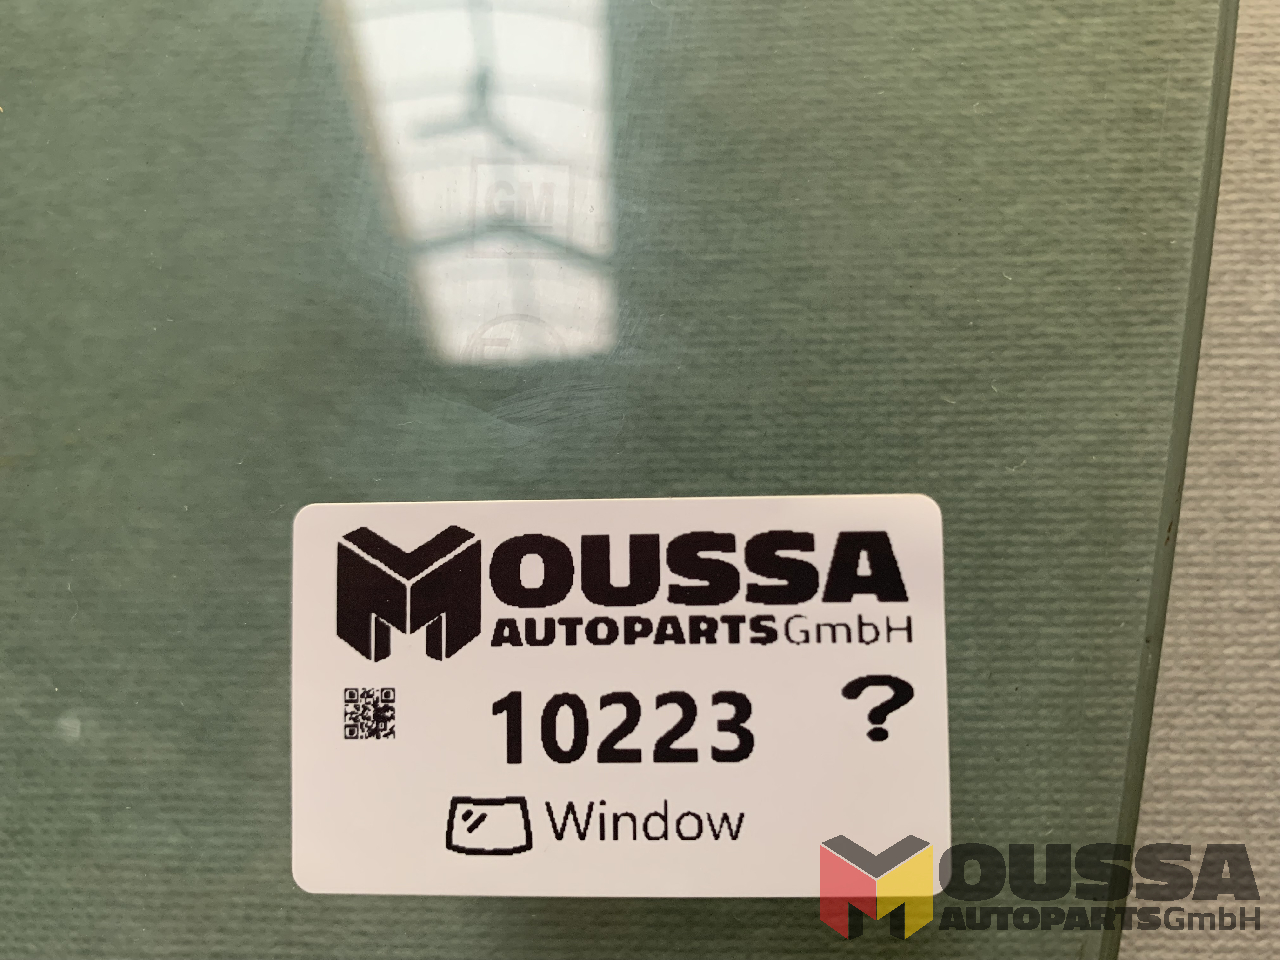 MOUSSA-AUTOPARTS-64919d04e0bc2.jpg